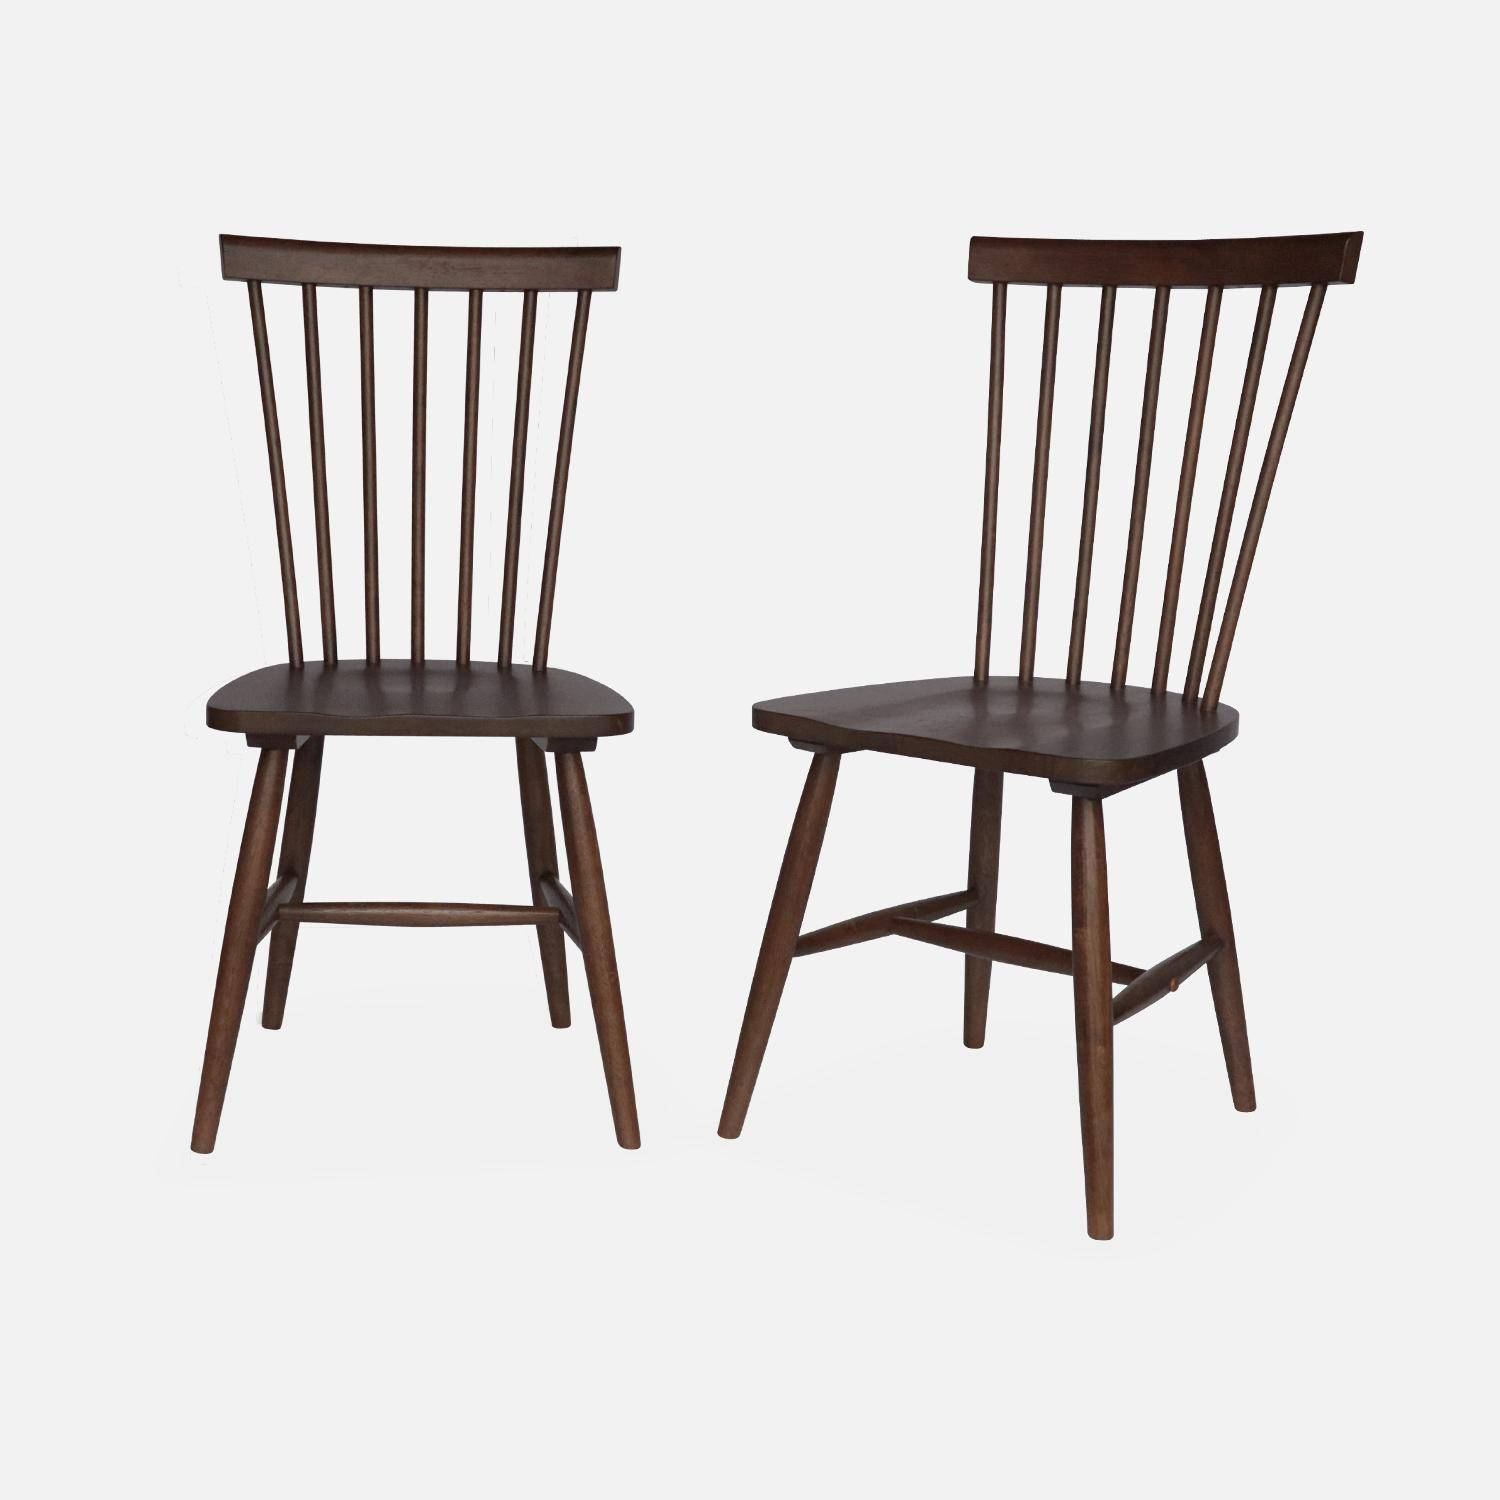 Conjunto de 2 cadeiras de nogueira com ripas de madeira de borracha, ROMIE, L 50,8 x P 44,2 x A 90cm.,sweeek,Photo4